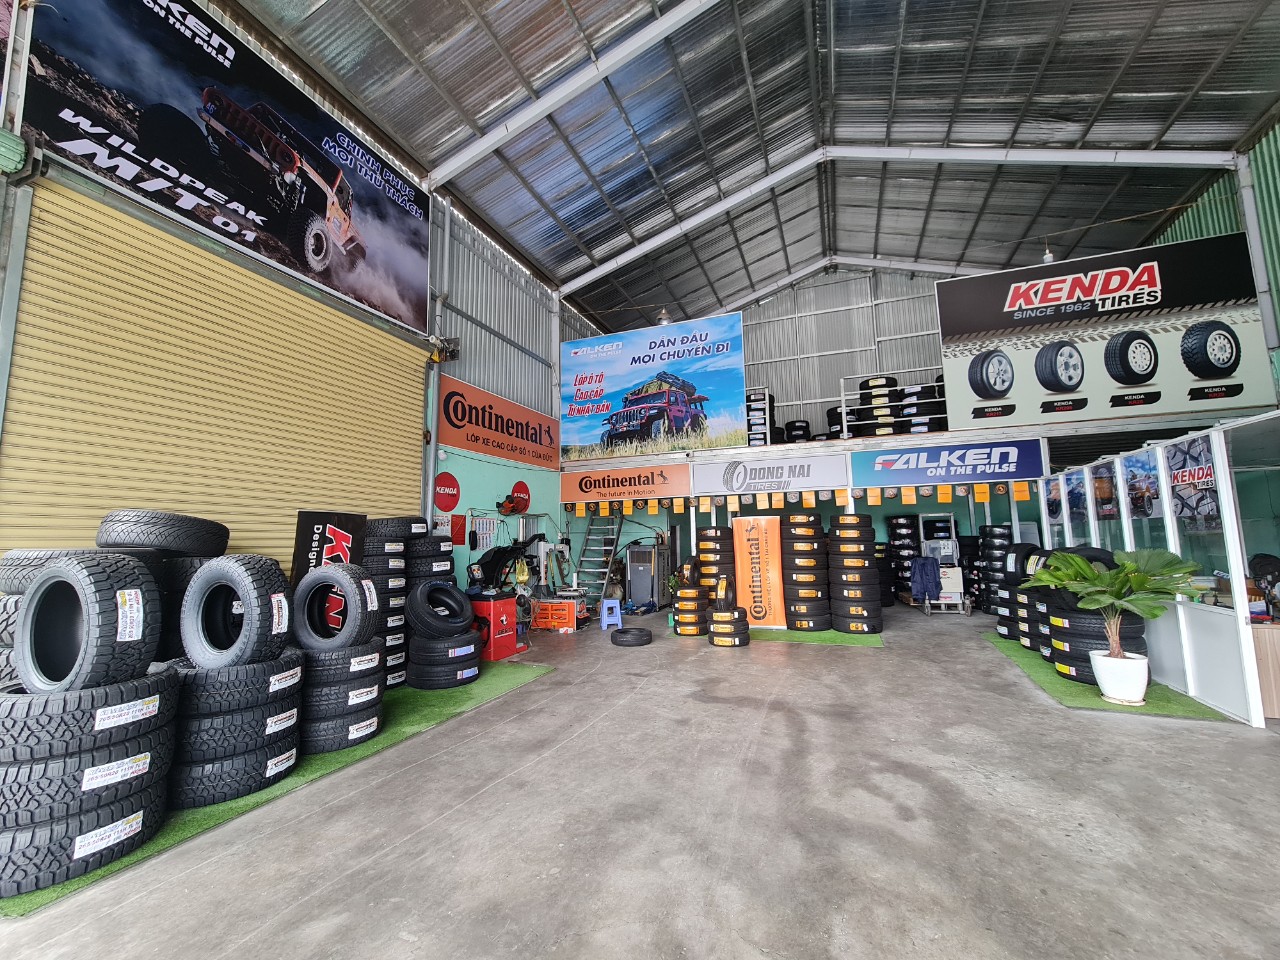 TƯ VẤN : Địa chỉ thay lốp xe Toyota Hilux chính hãng - giá tốt ở Biên Hoà, Đồng Nai.